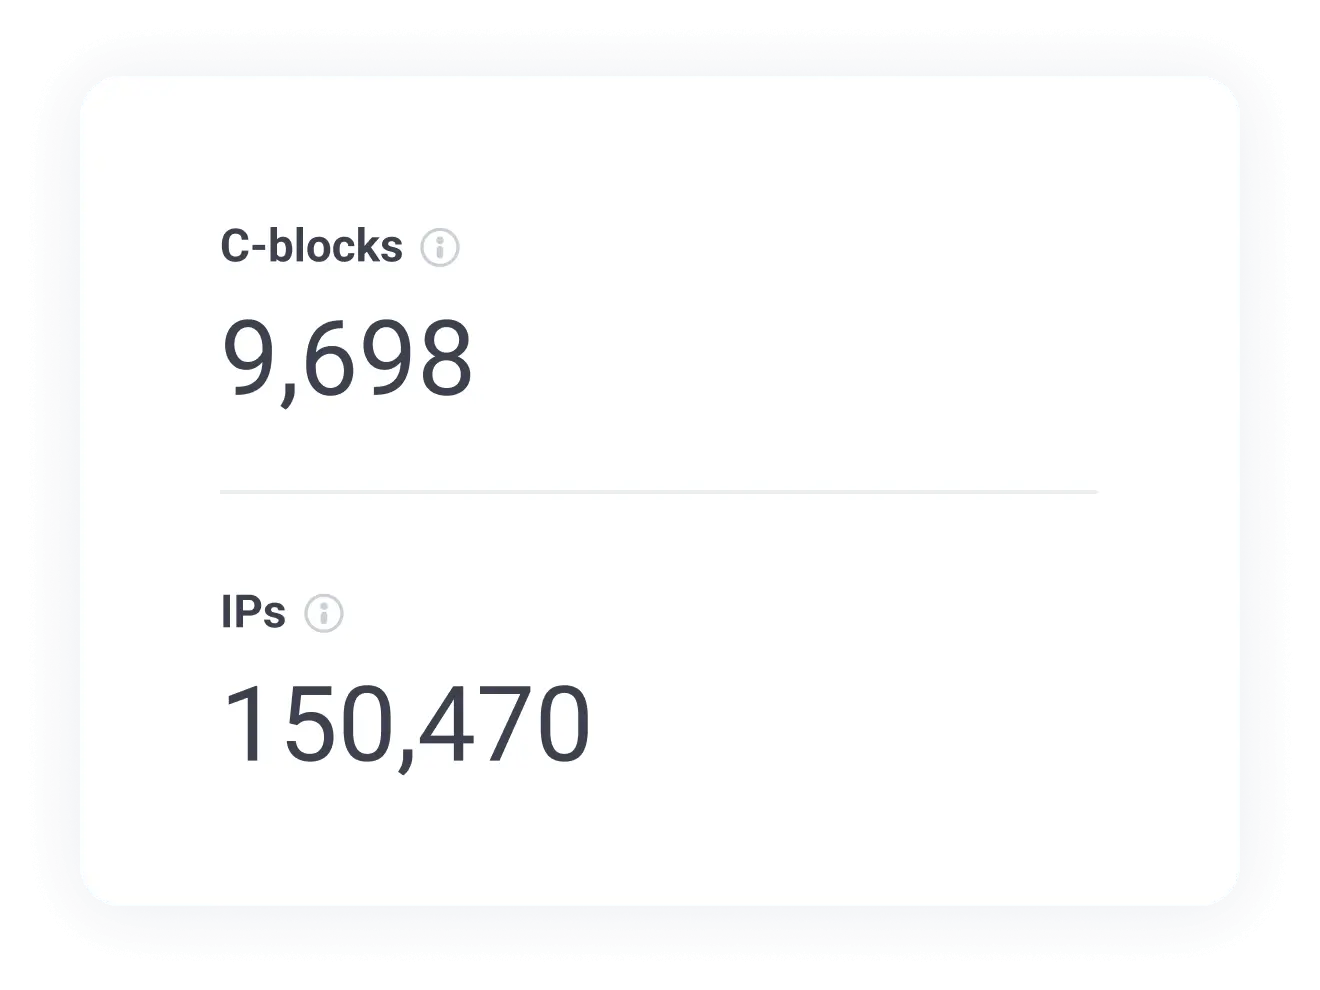 Sprawdź liczbę unikalnych adresów IP i bloków C